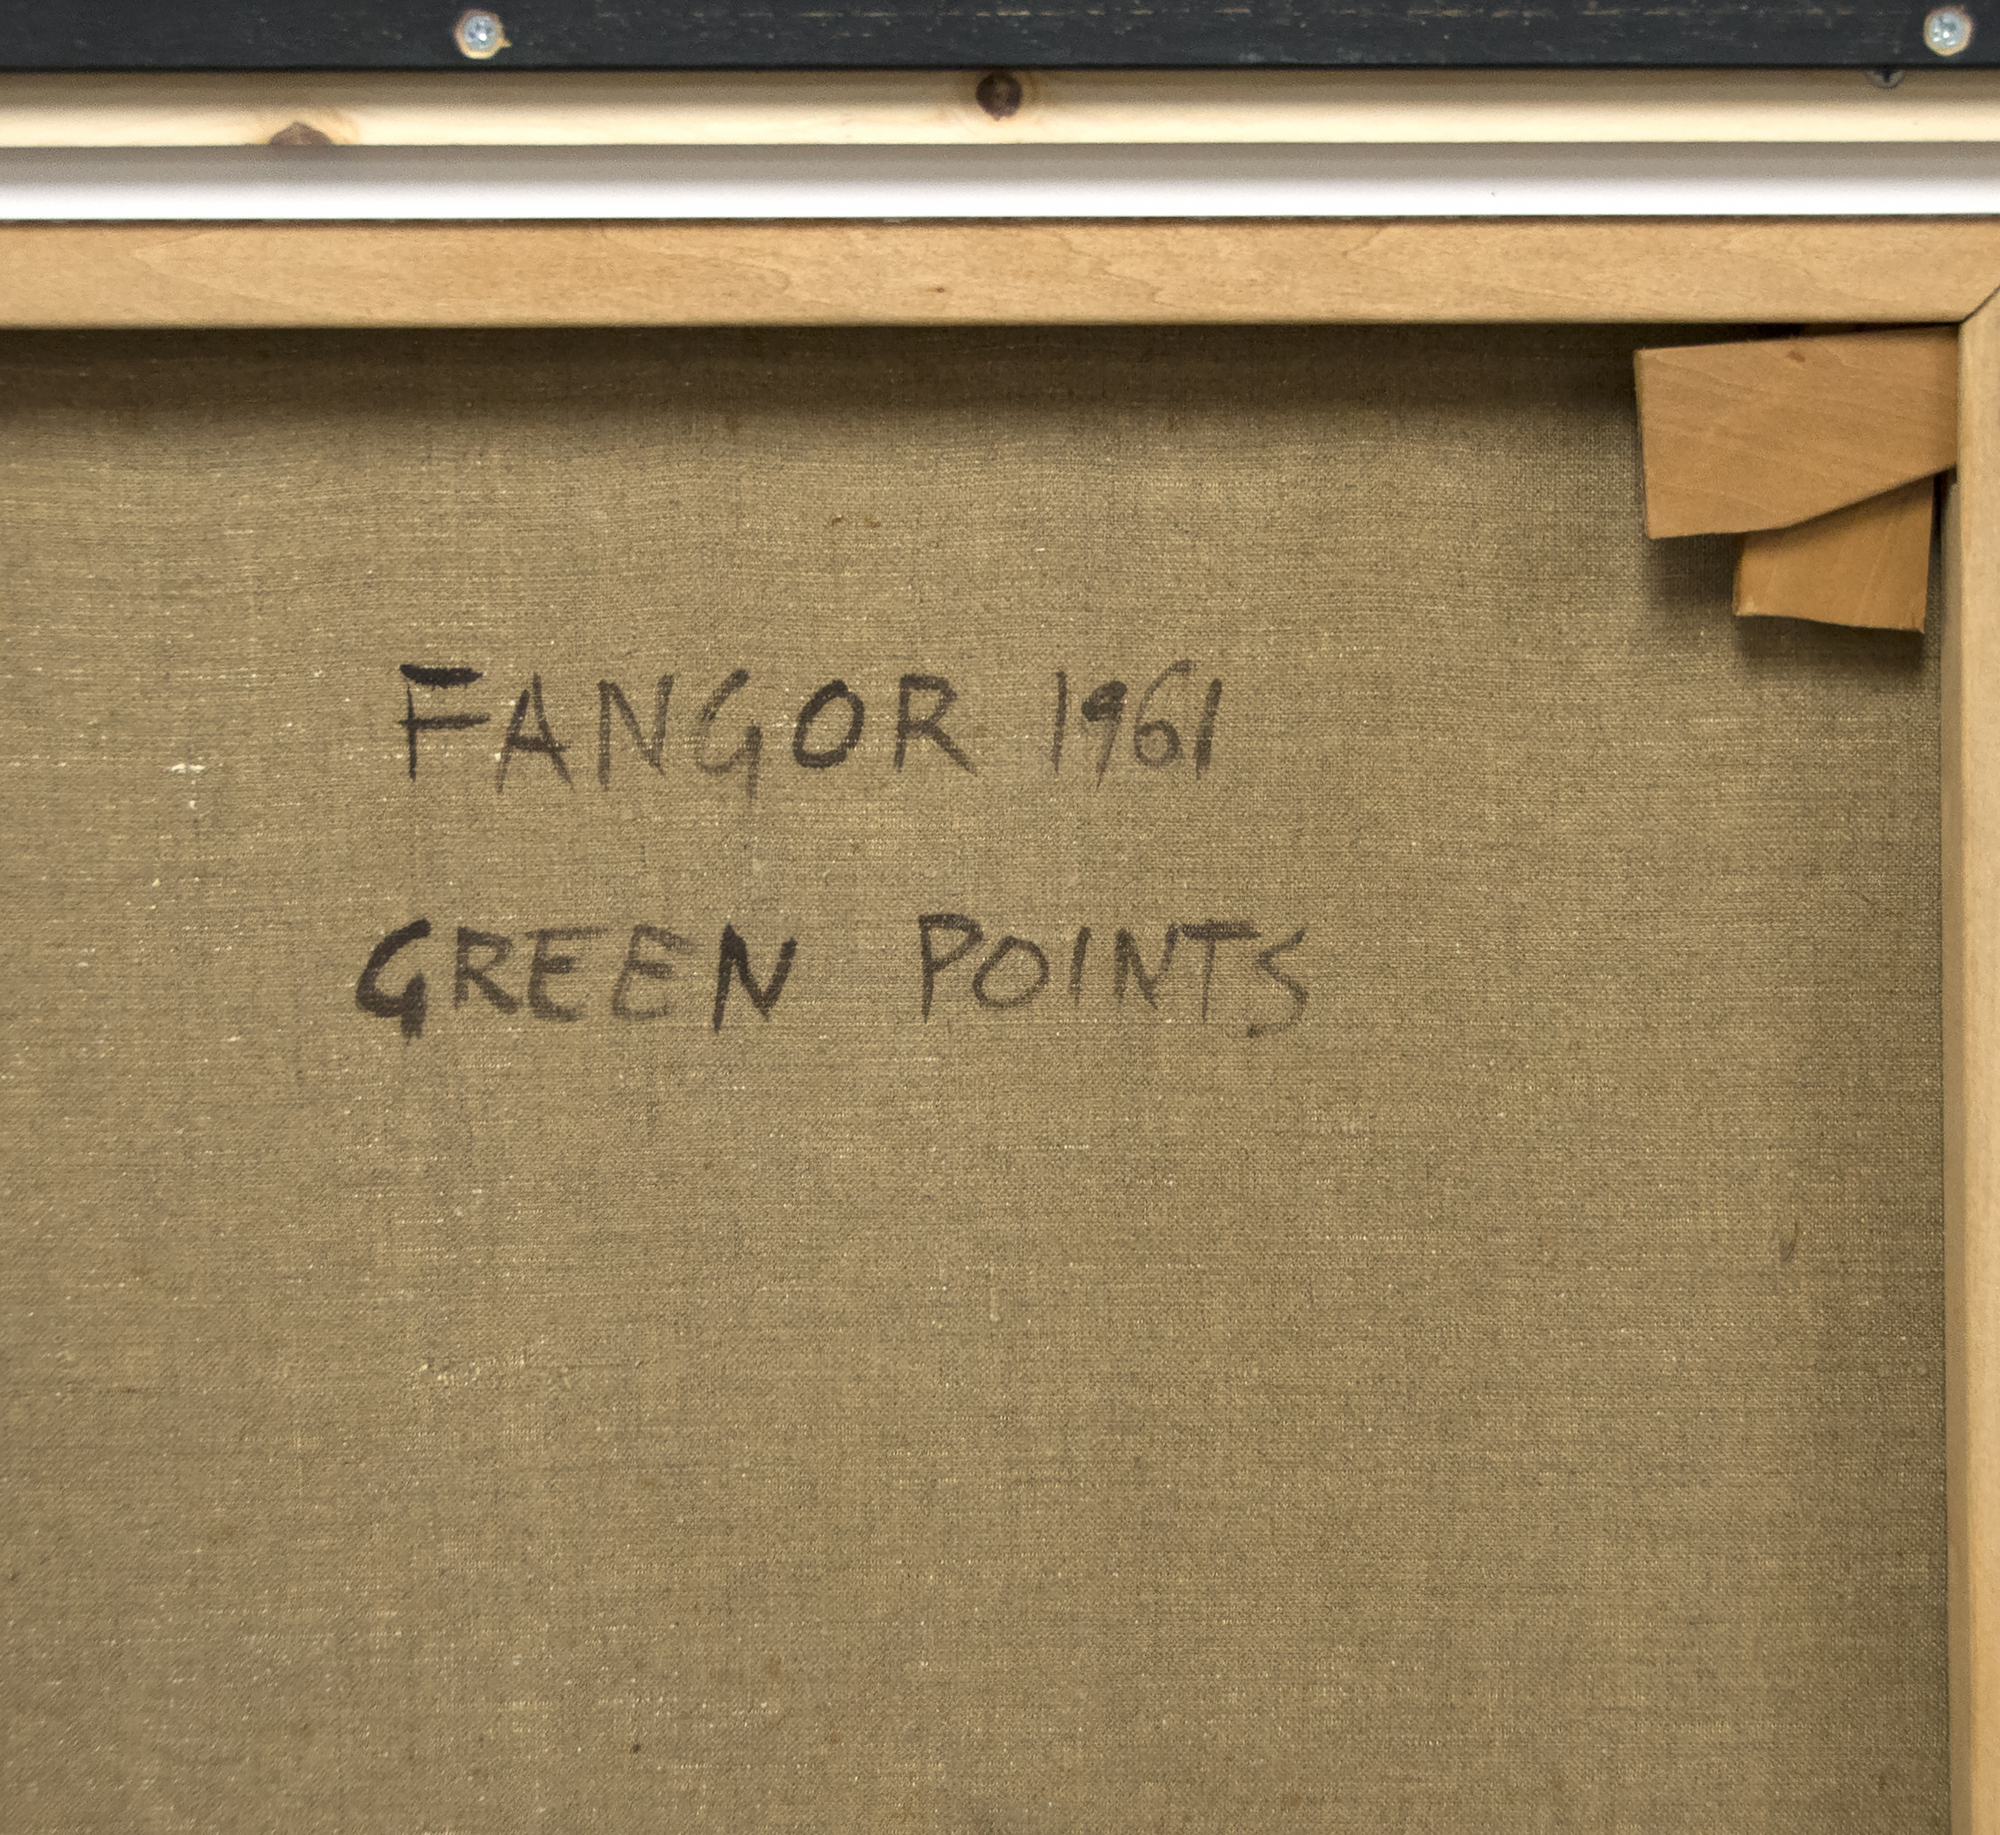 WOJCIECH FANGOR - Points verts - huile sur toile - 52 7/8 x 33 1/2 po.